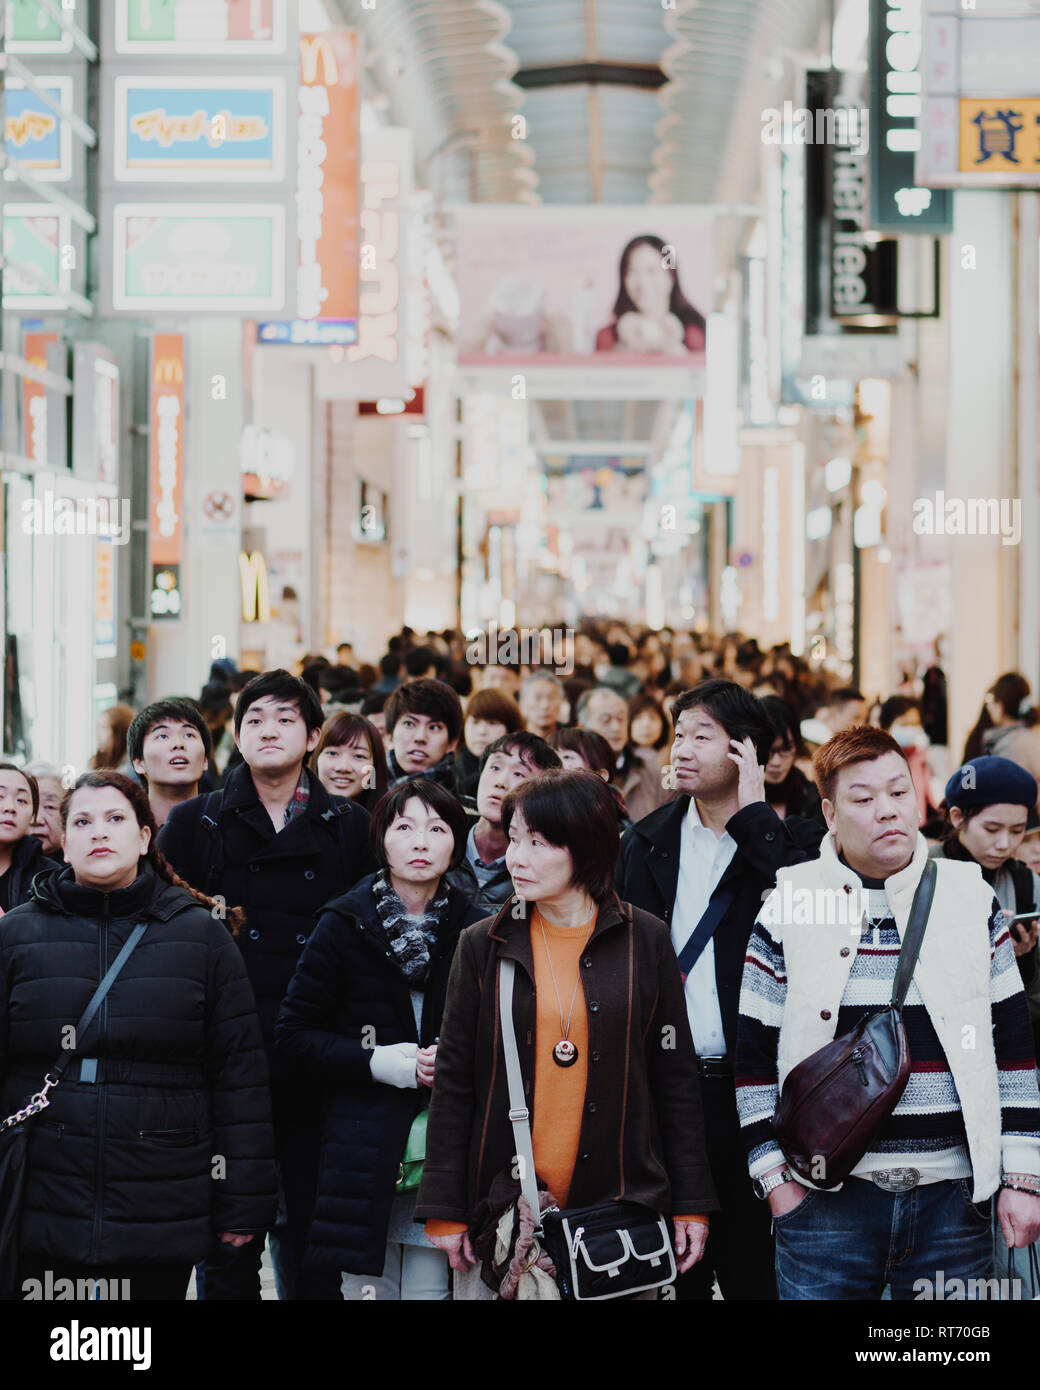 Folla enorme di persone tutti guardando cose diverse in attesa ad un incrocio nel Dotonbori, Osaka. Foto Stock